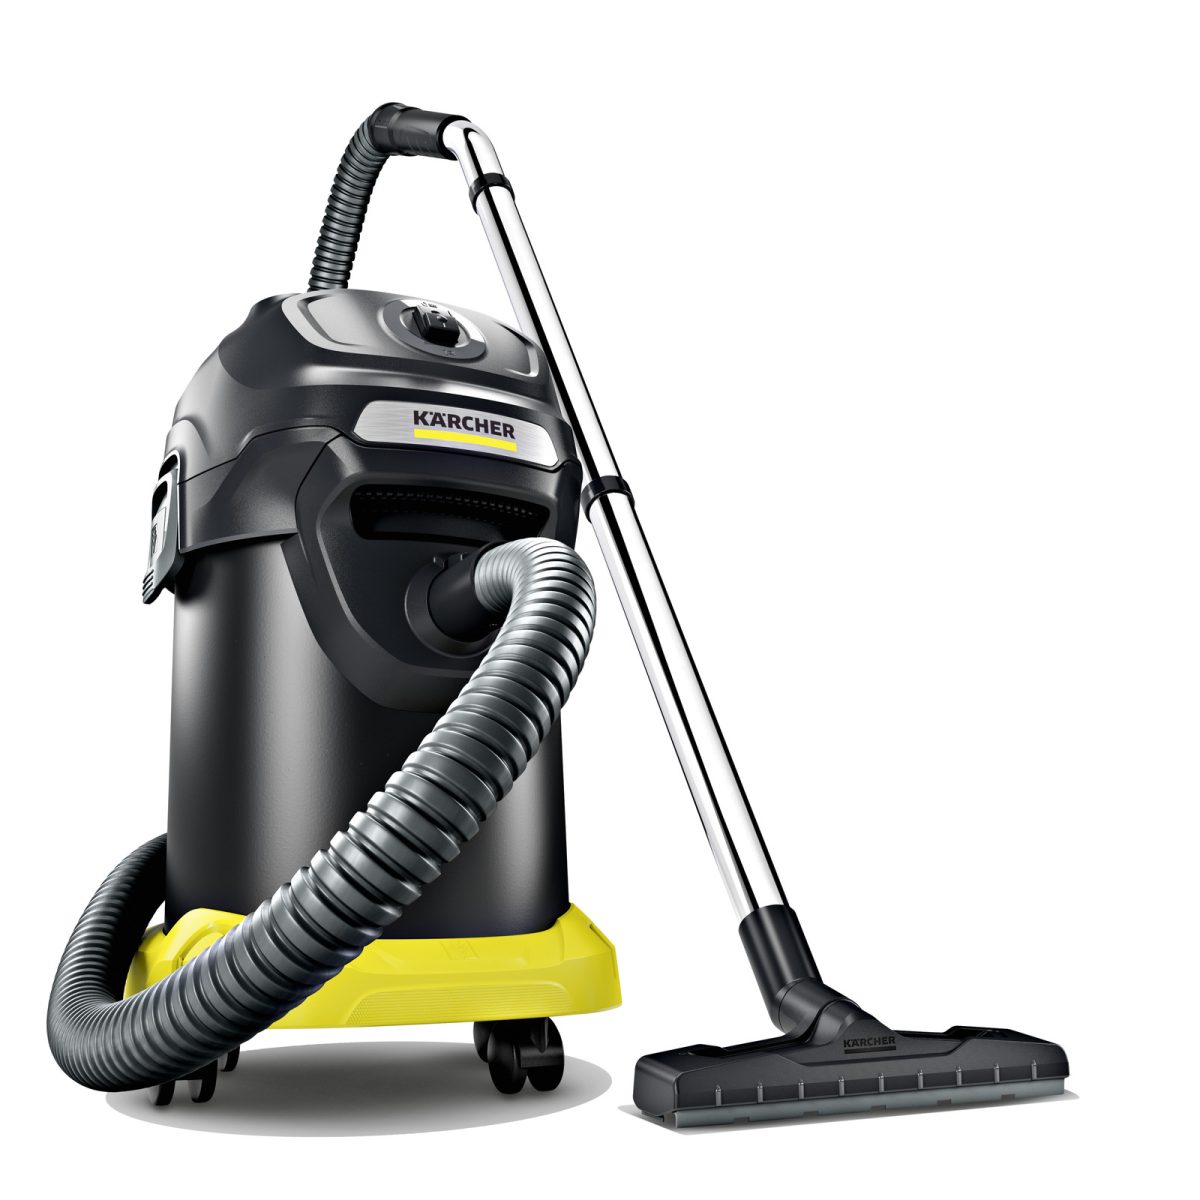 Kärcher AD 4 Premium Ash Vacuum Cleaner